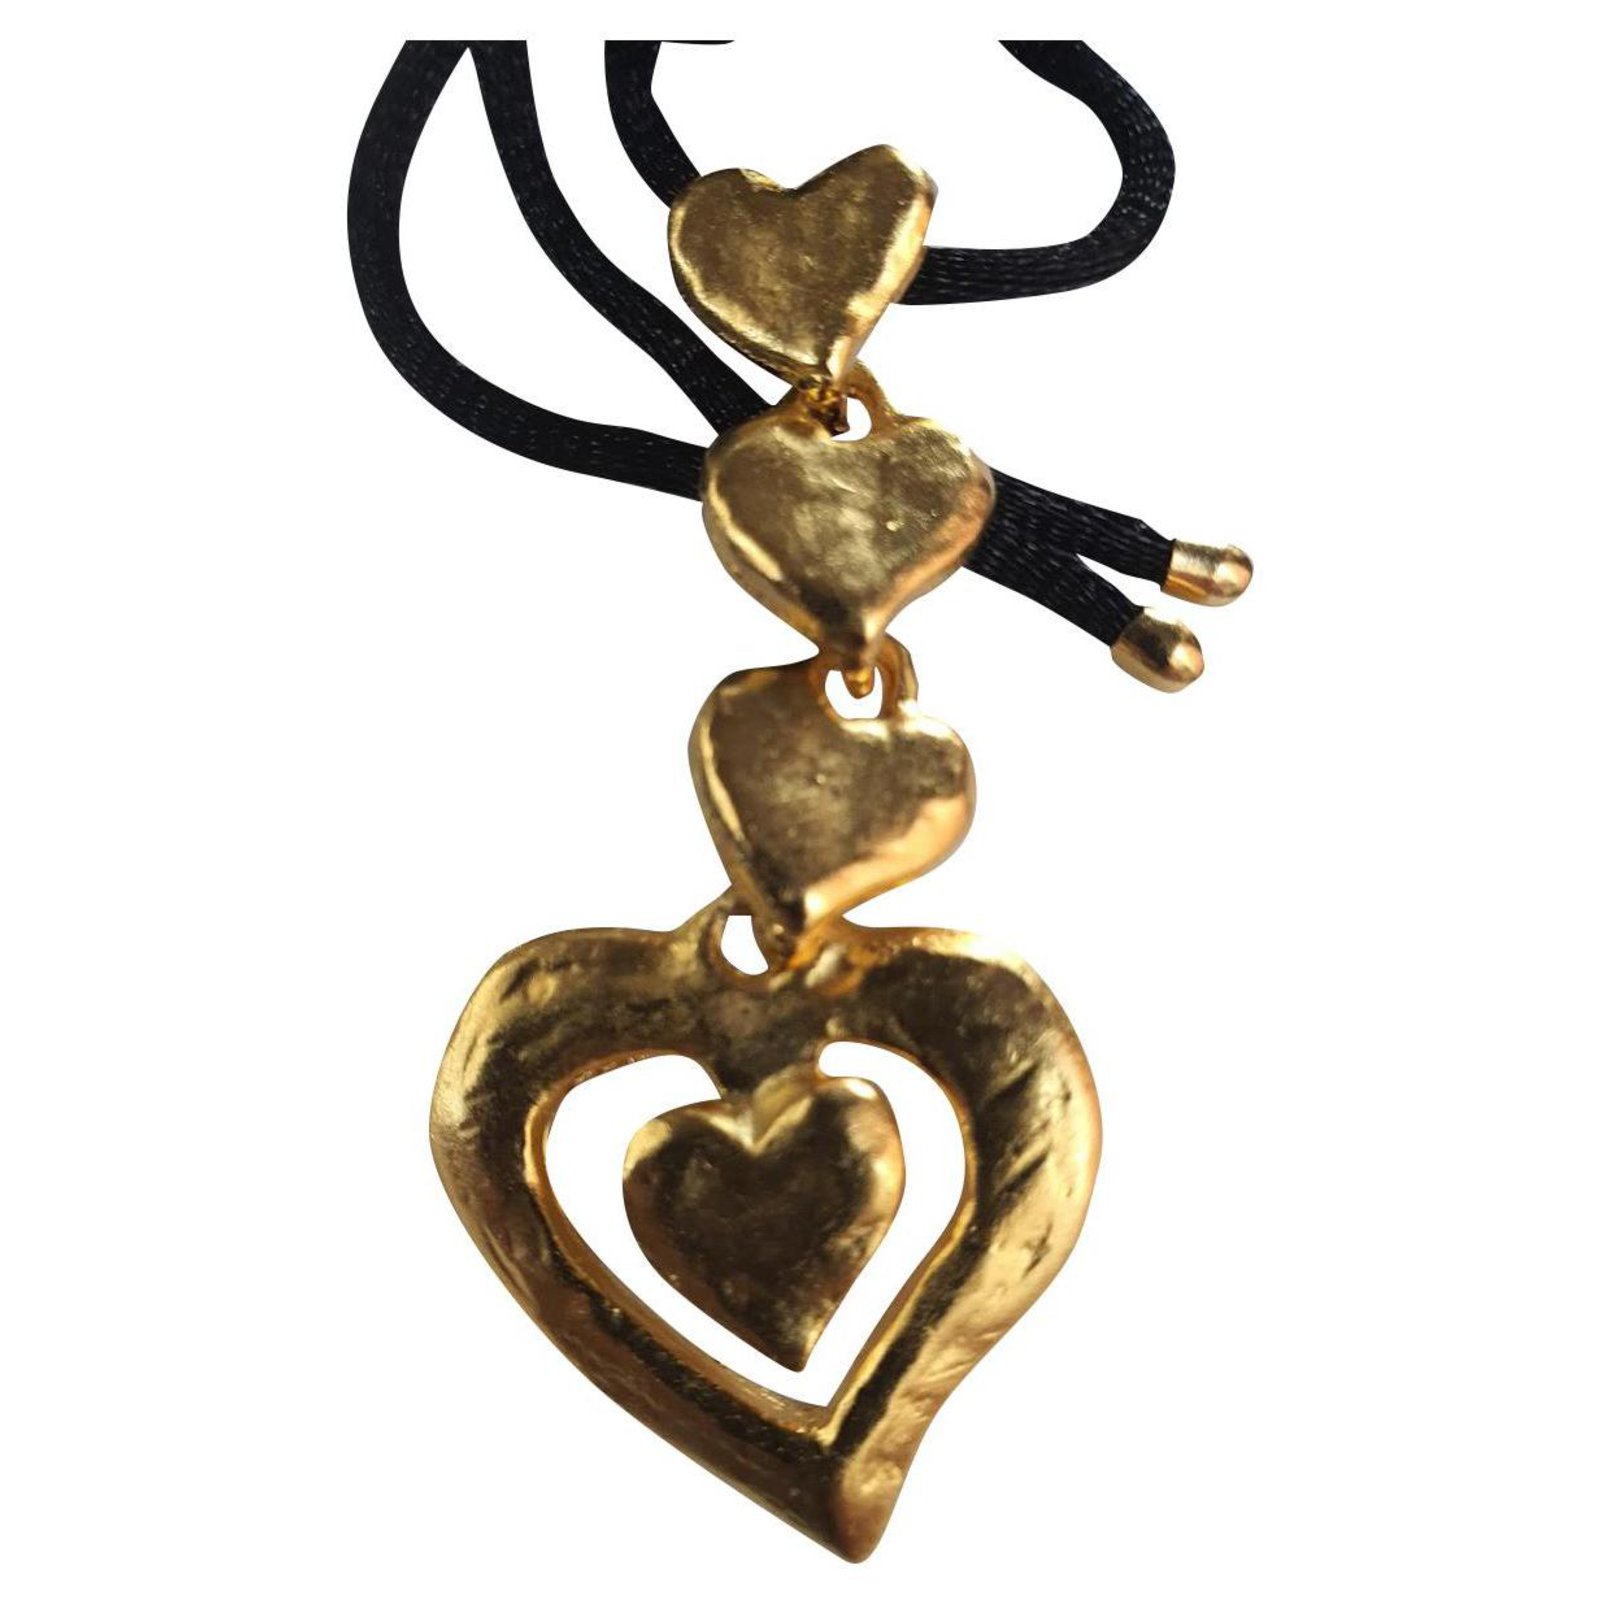 Yves Saint Laurent Logo Necklace Bronze,Gold